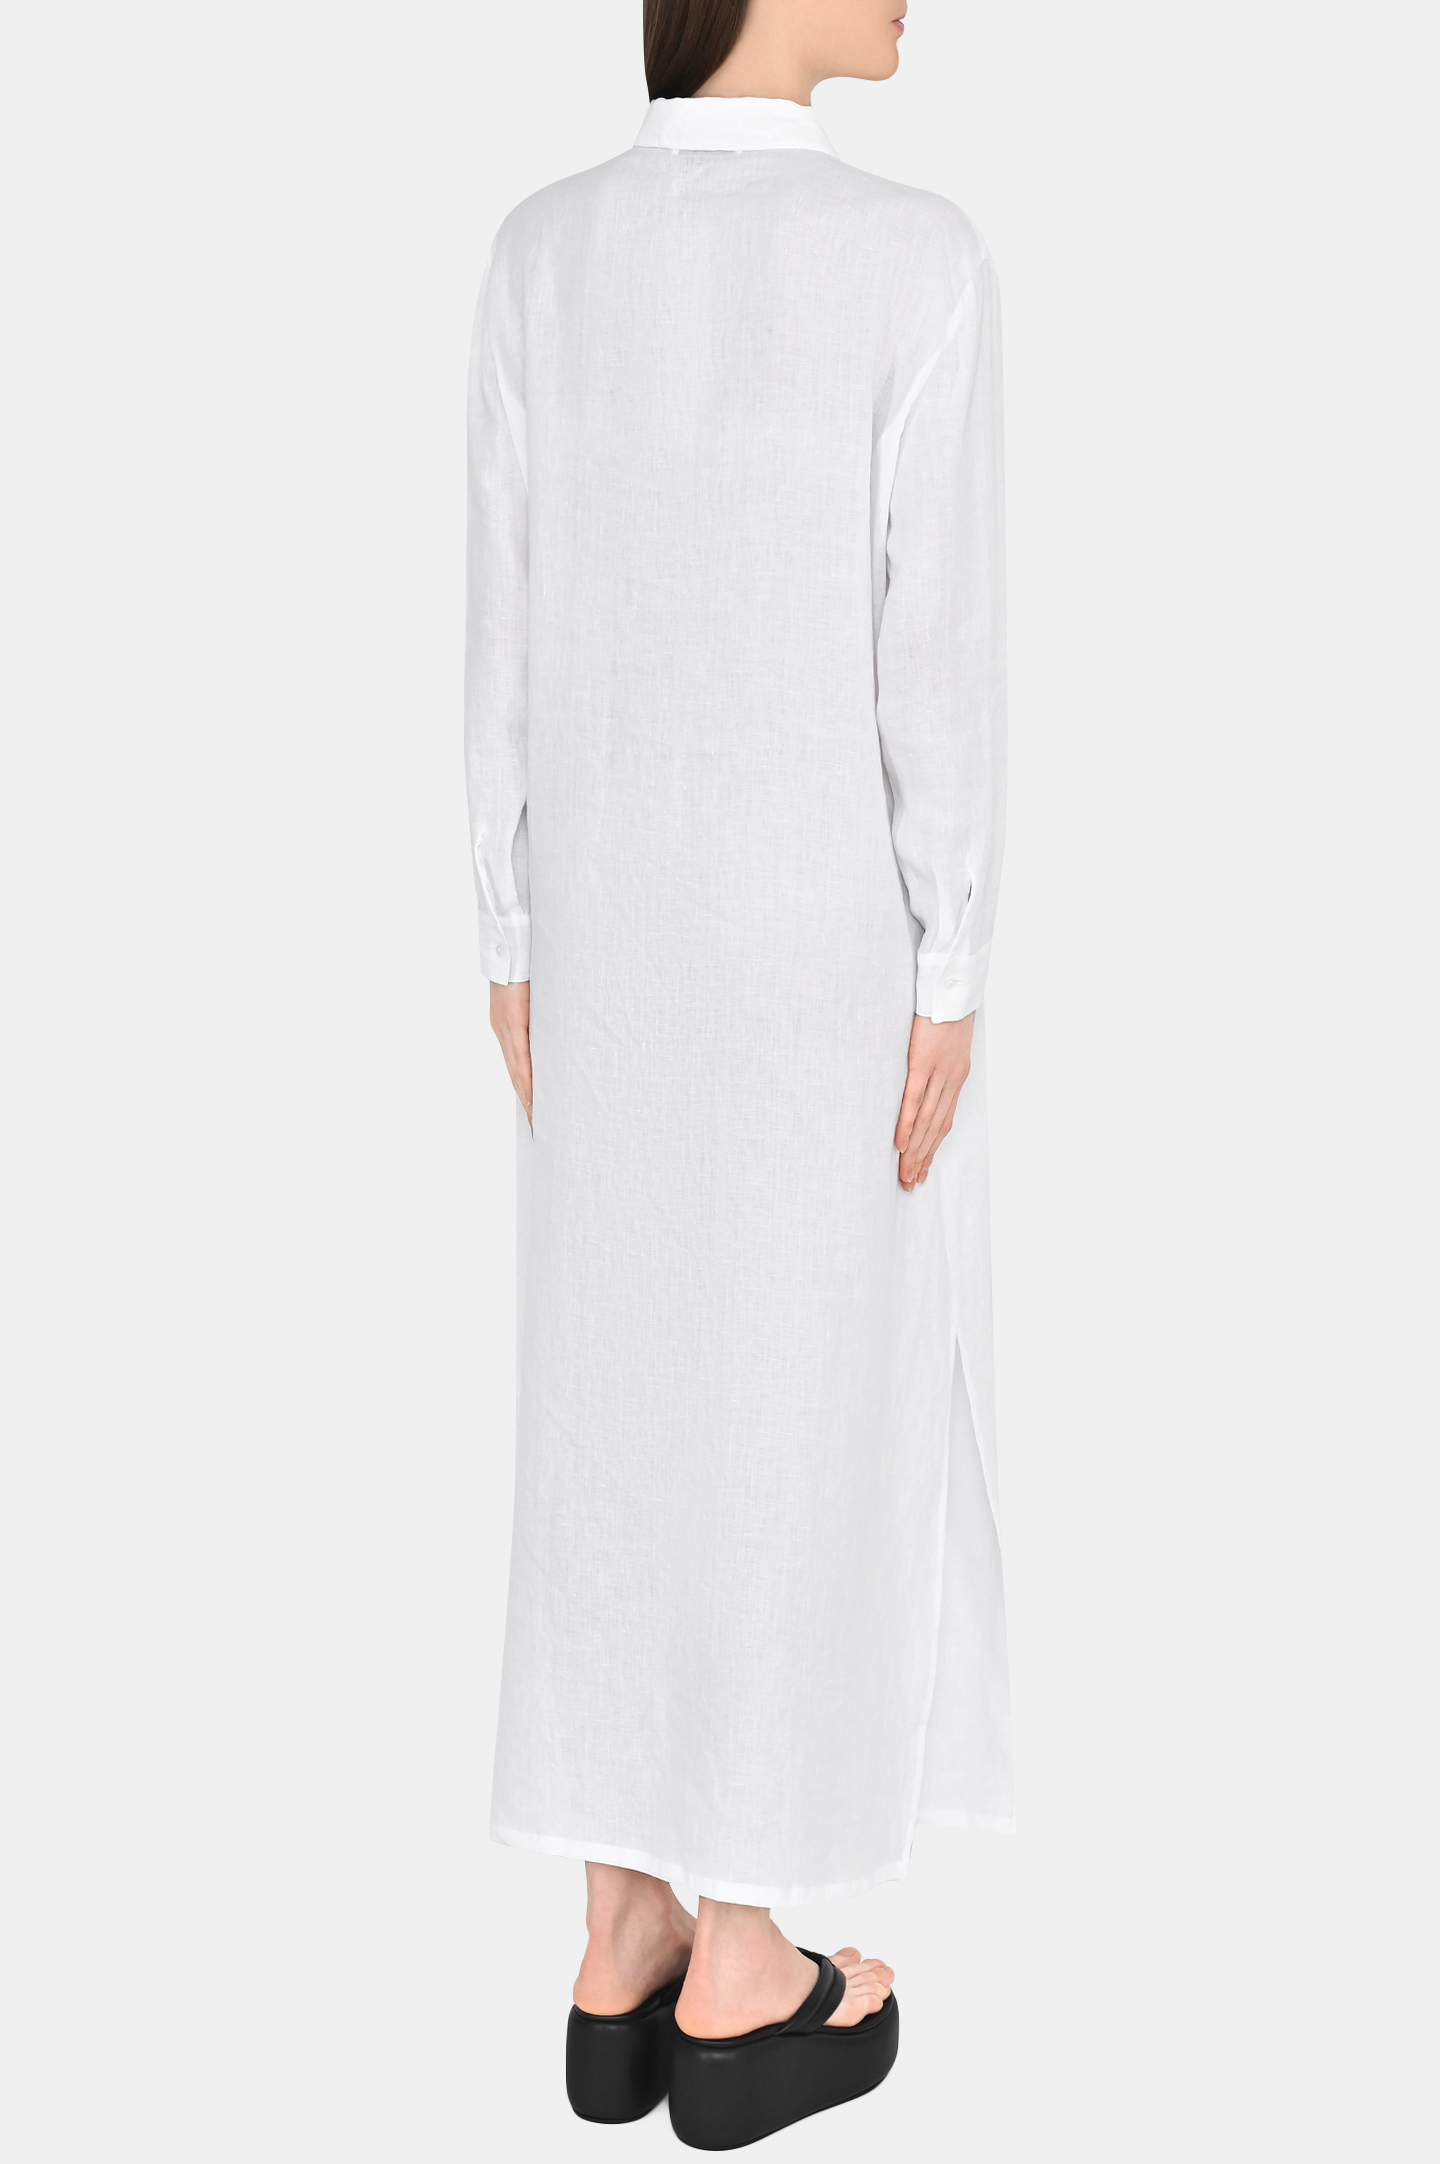 Платье FABIANA FILIPPI ABD273W217V886, цвет: Белый, Женский